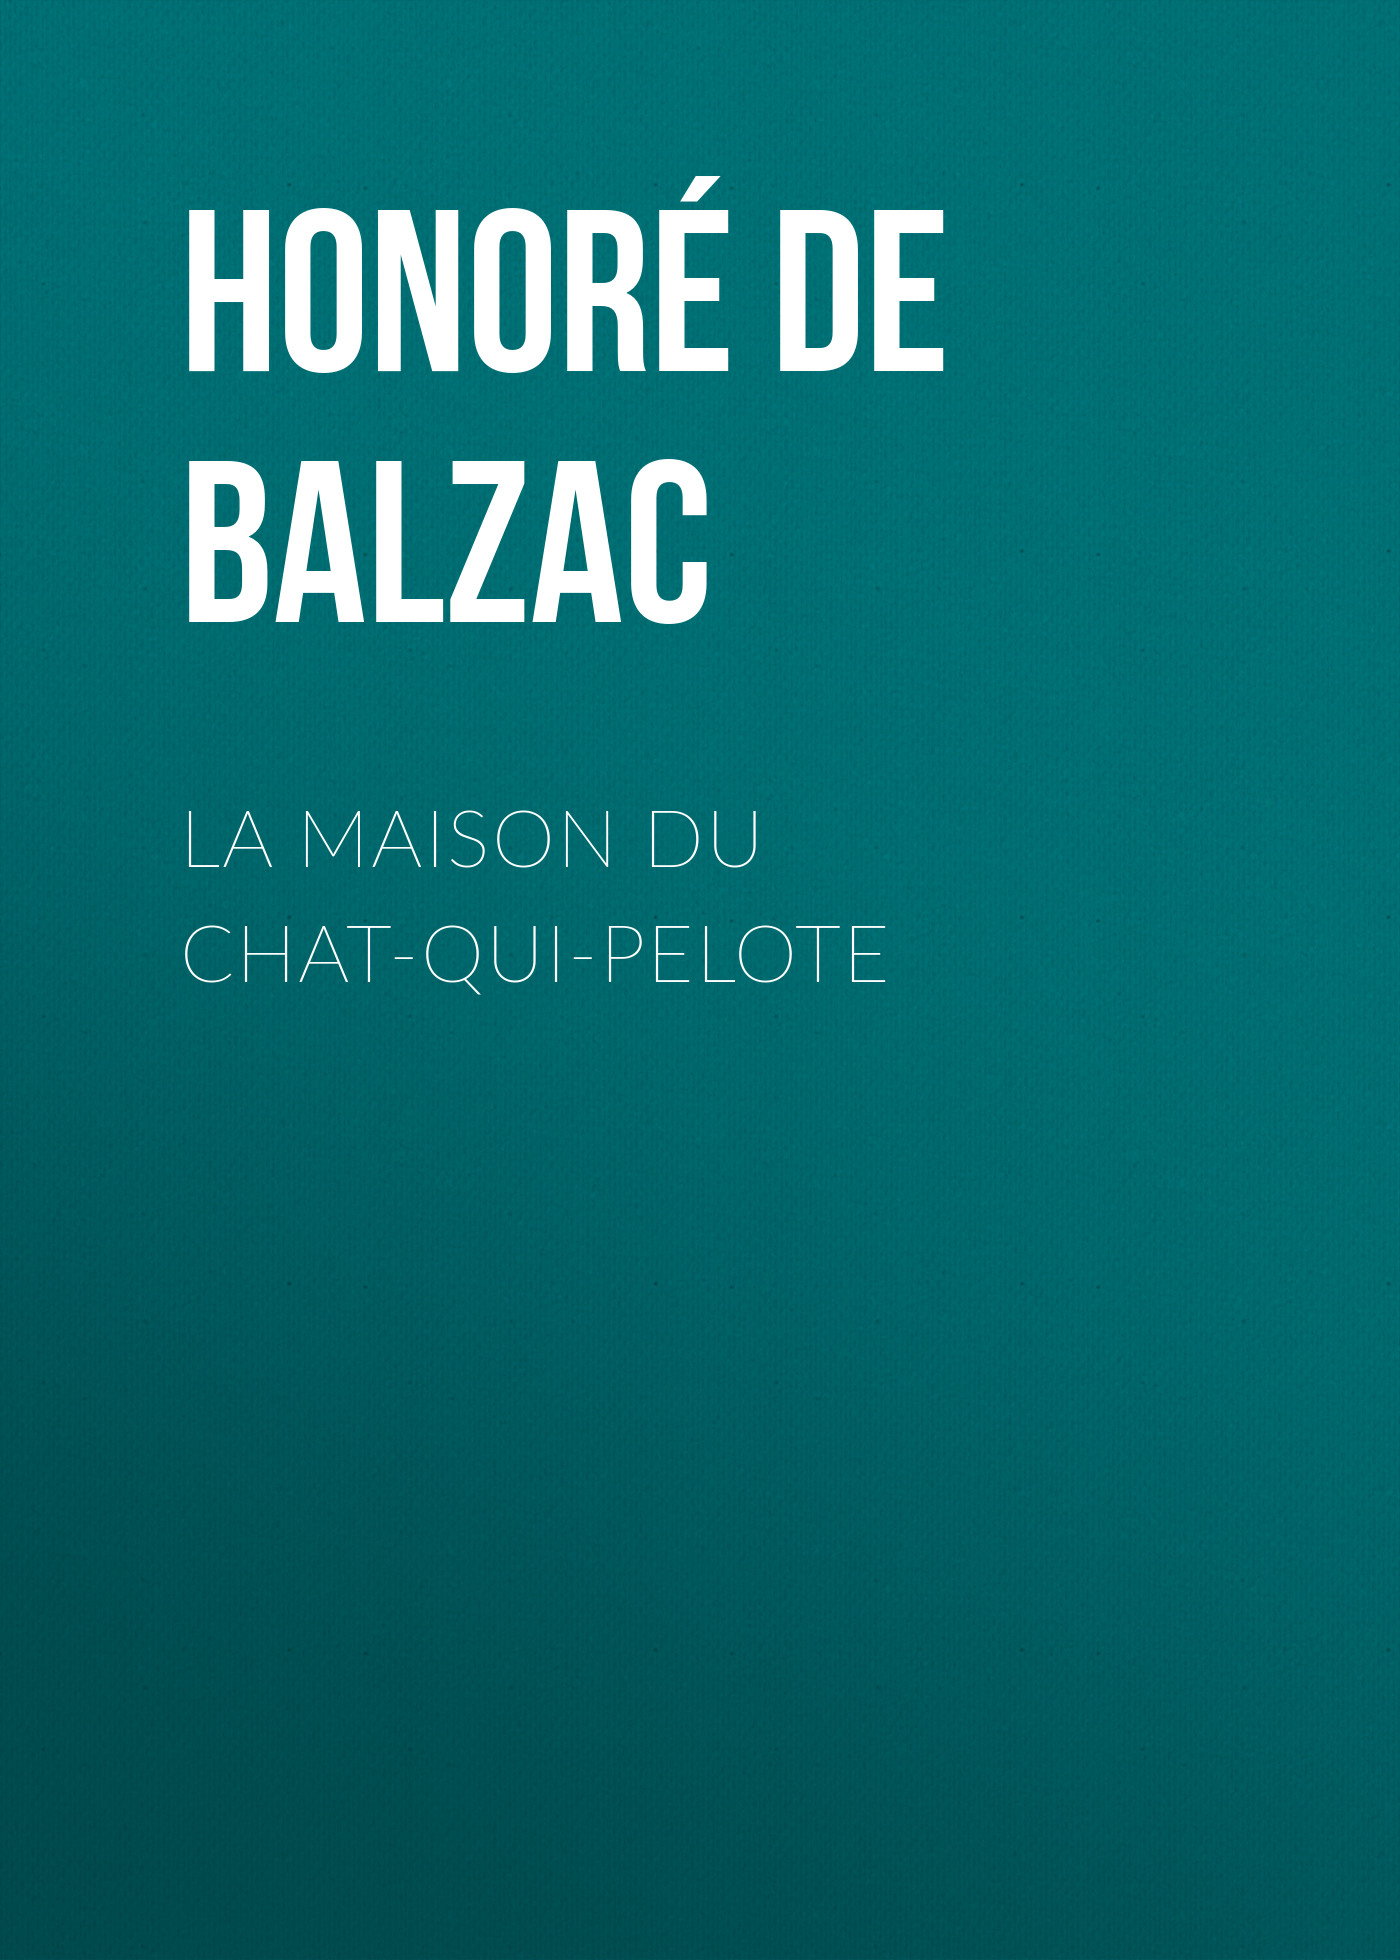 Книга La Maison du Chat-qui-pelote из серии , созданная Honoré Balzac, может относится к жанру Литература 19 века, Зарубежная старинная литература, Зарубежная классика. Стоимость электронной книги La Maison du Chat-qui-pelote с идентификатором 25019035 составляет 0 руб.